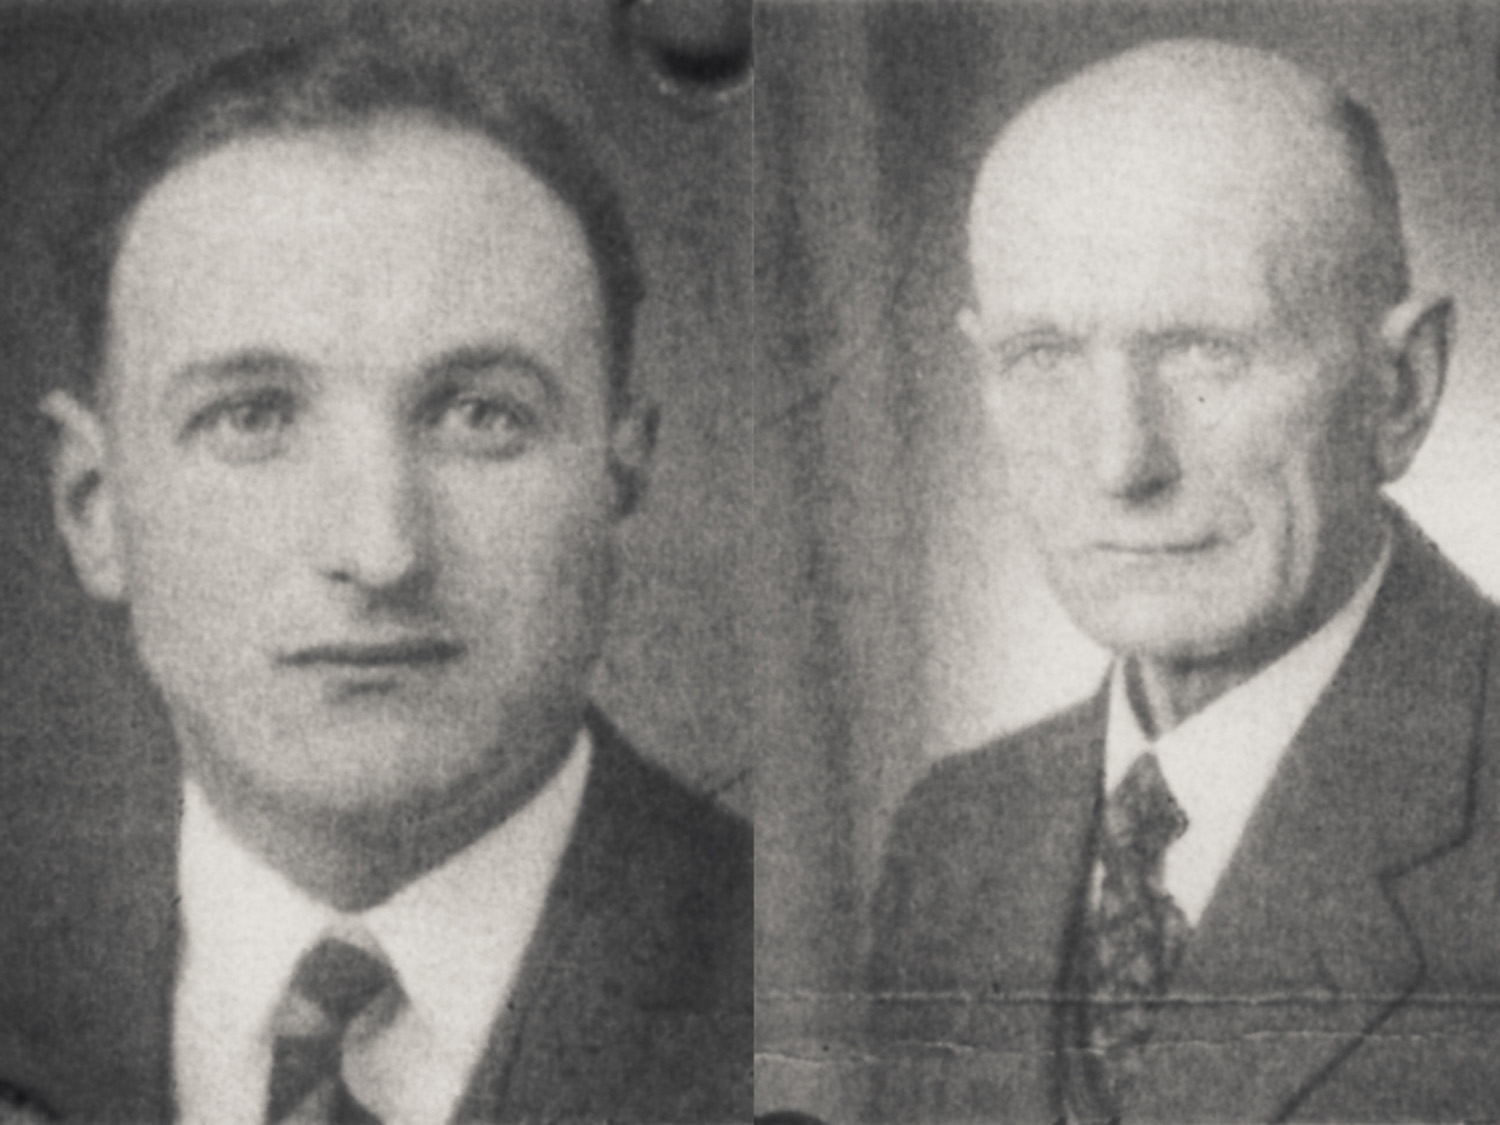 Gründer Wilhelm Benz (r) und Sohn Eugen Benz (l)